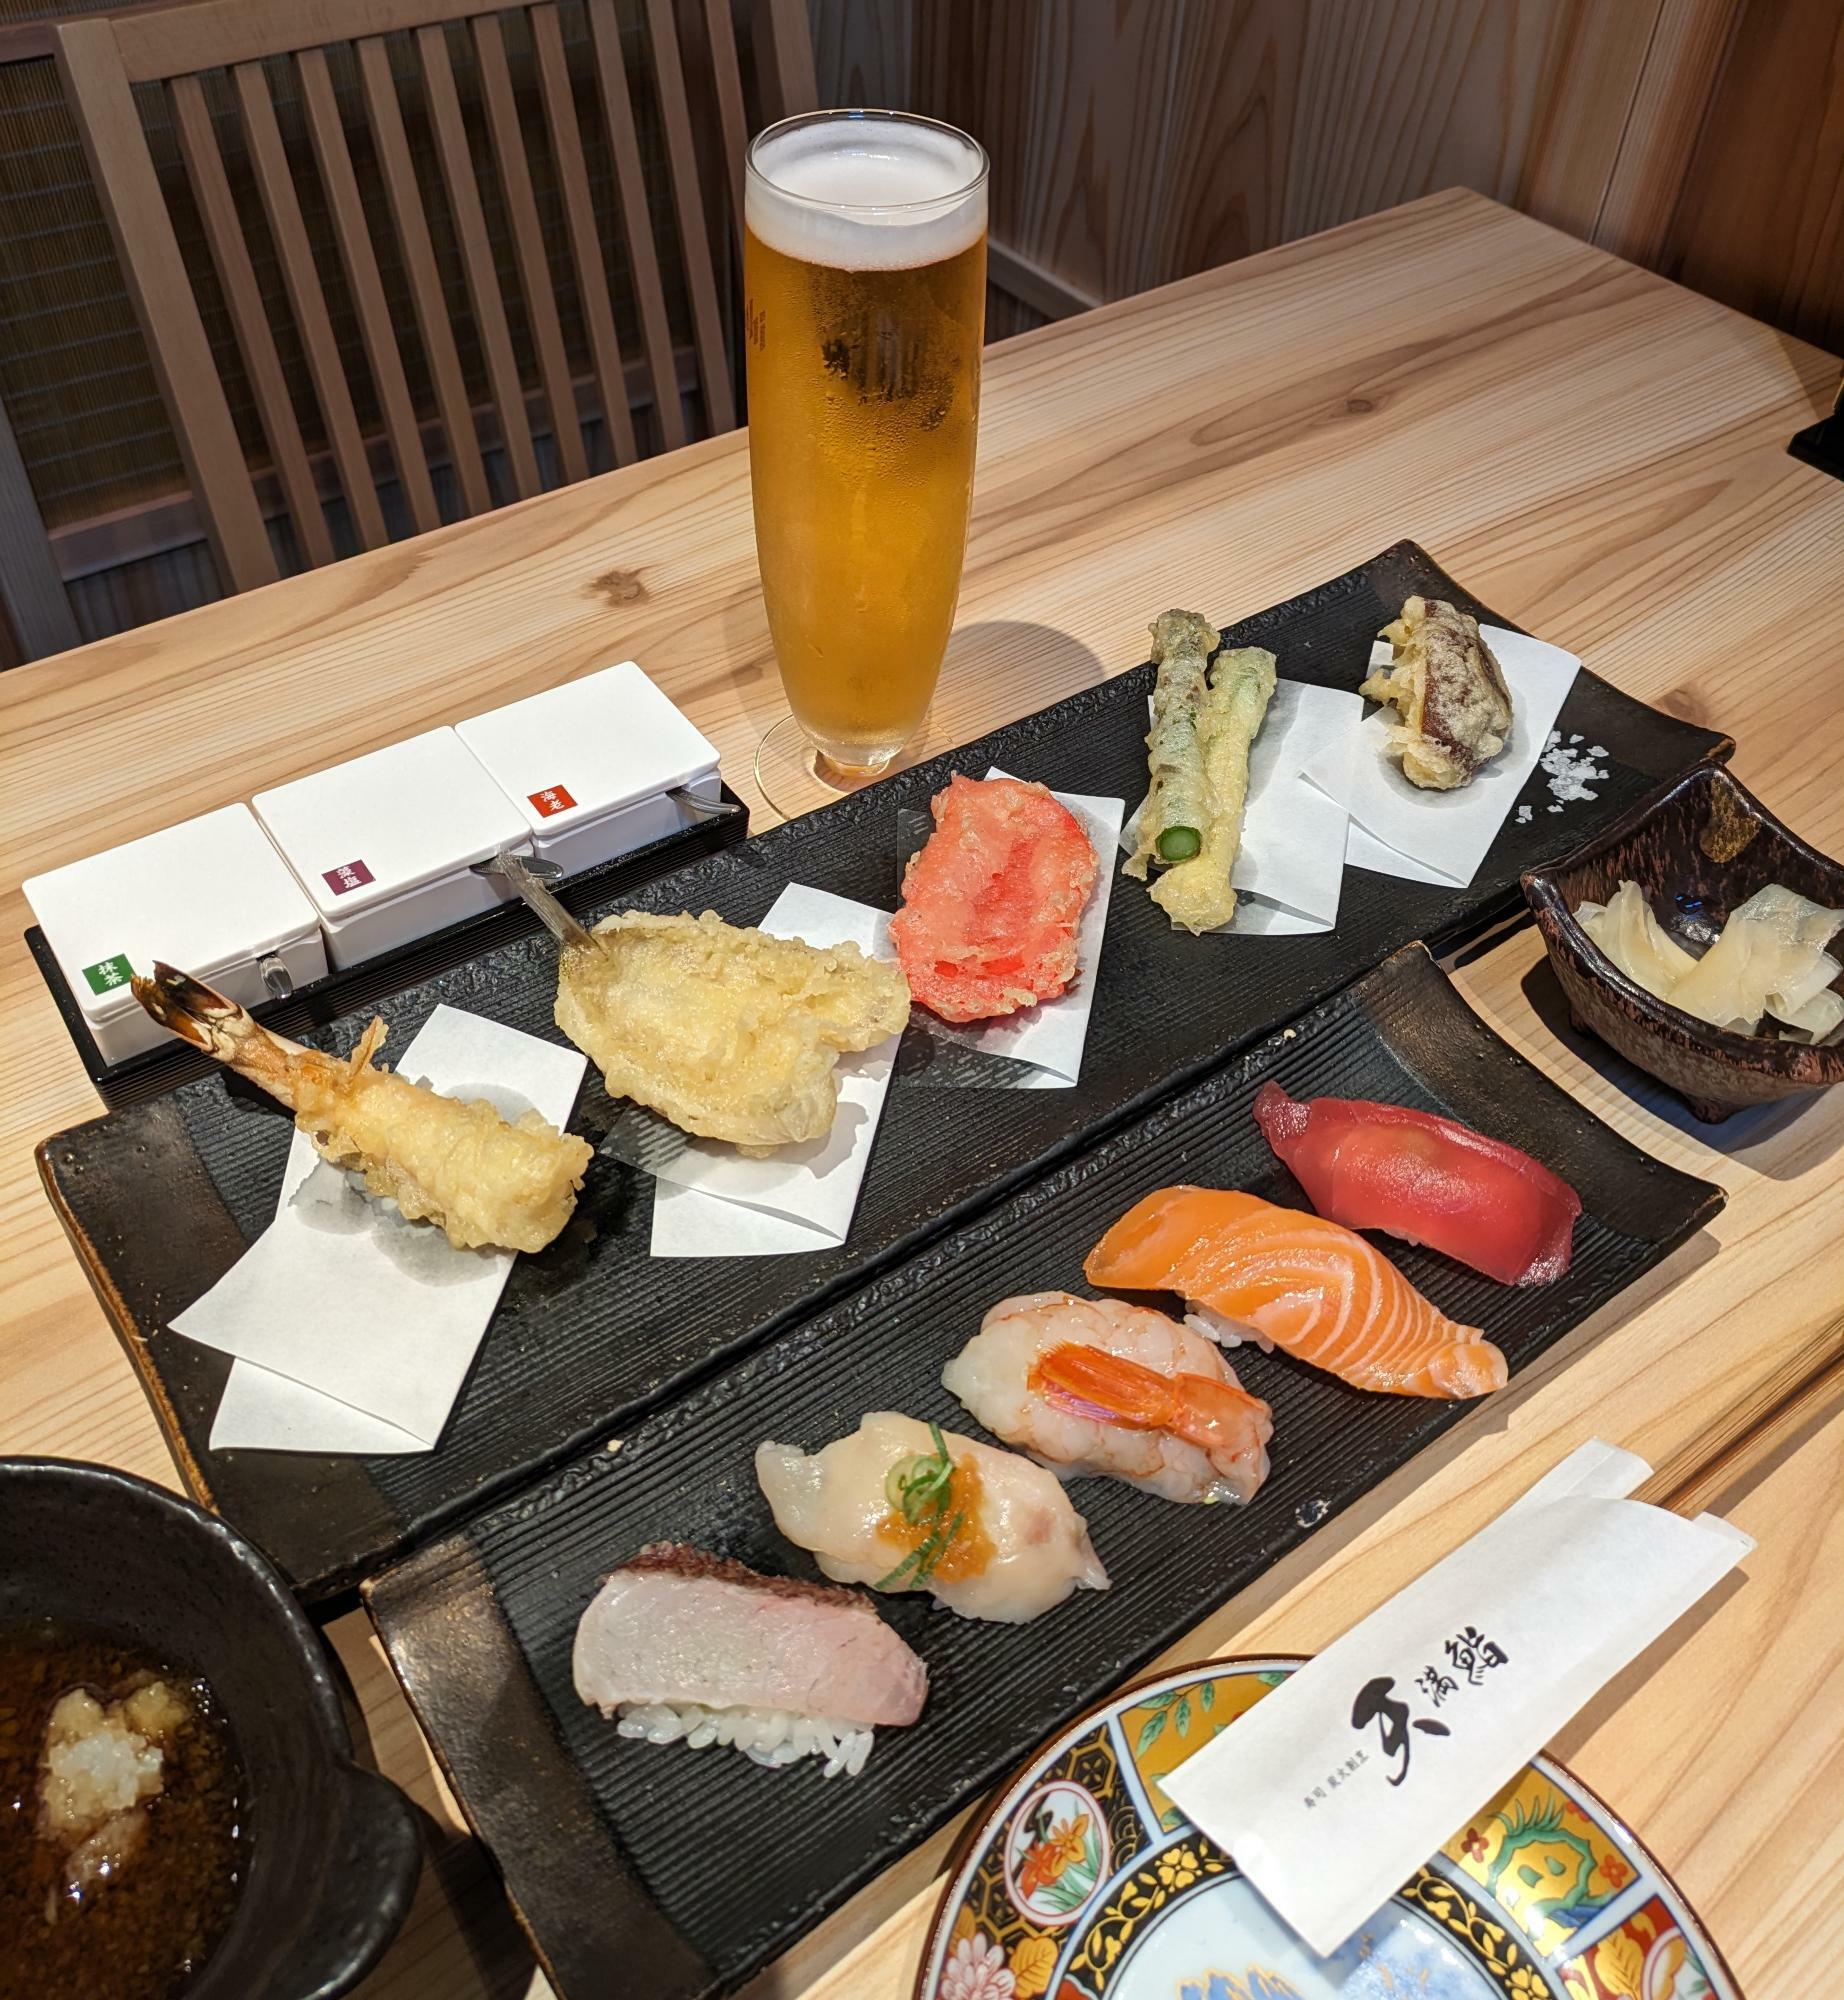 天ぷらや寿司の並びも美しい